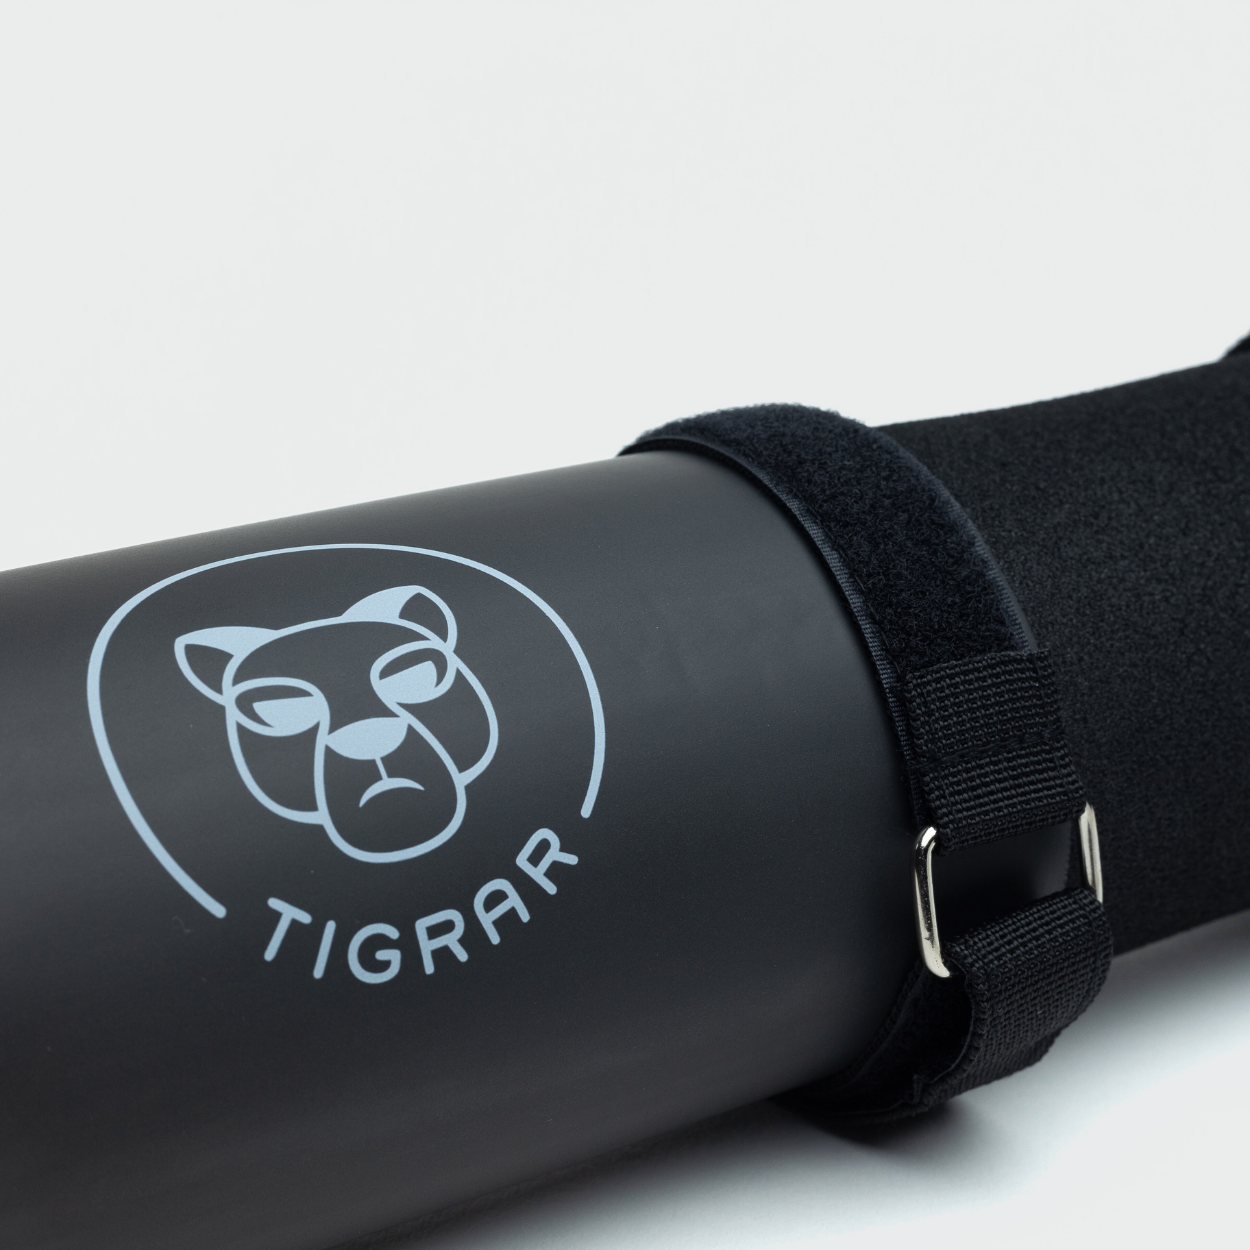 Gedetailleerde weergave van zwarte Tigrar hip thrust barbell pad, voor extra comfort bij liften.